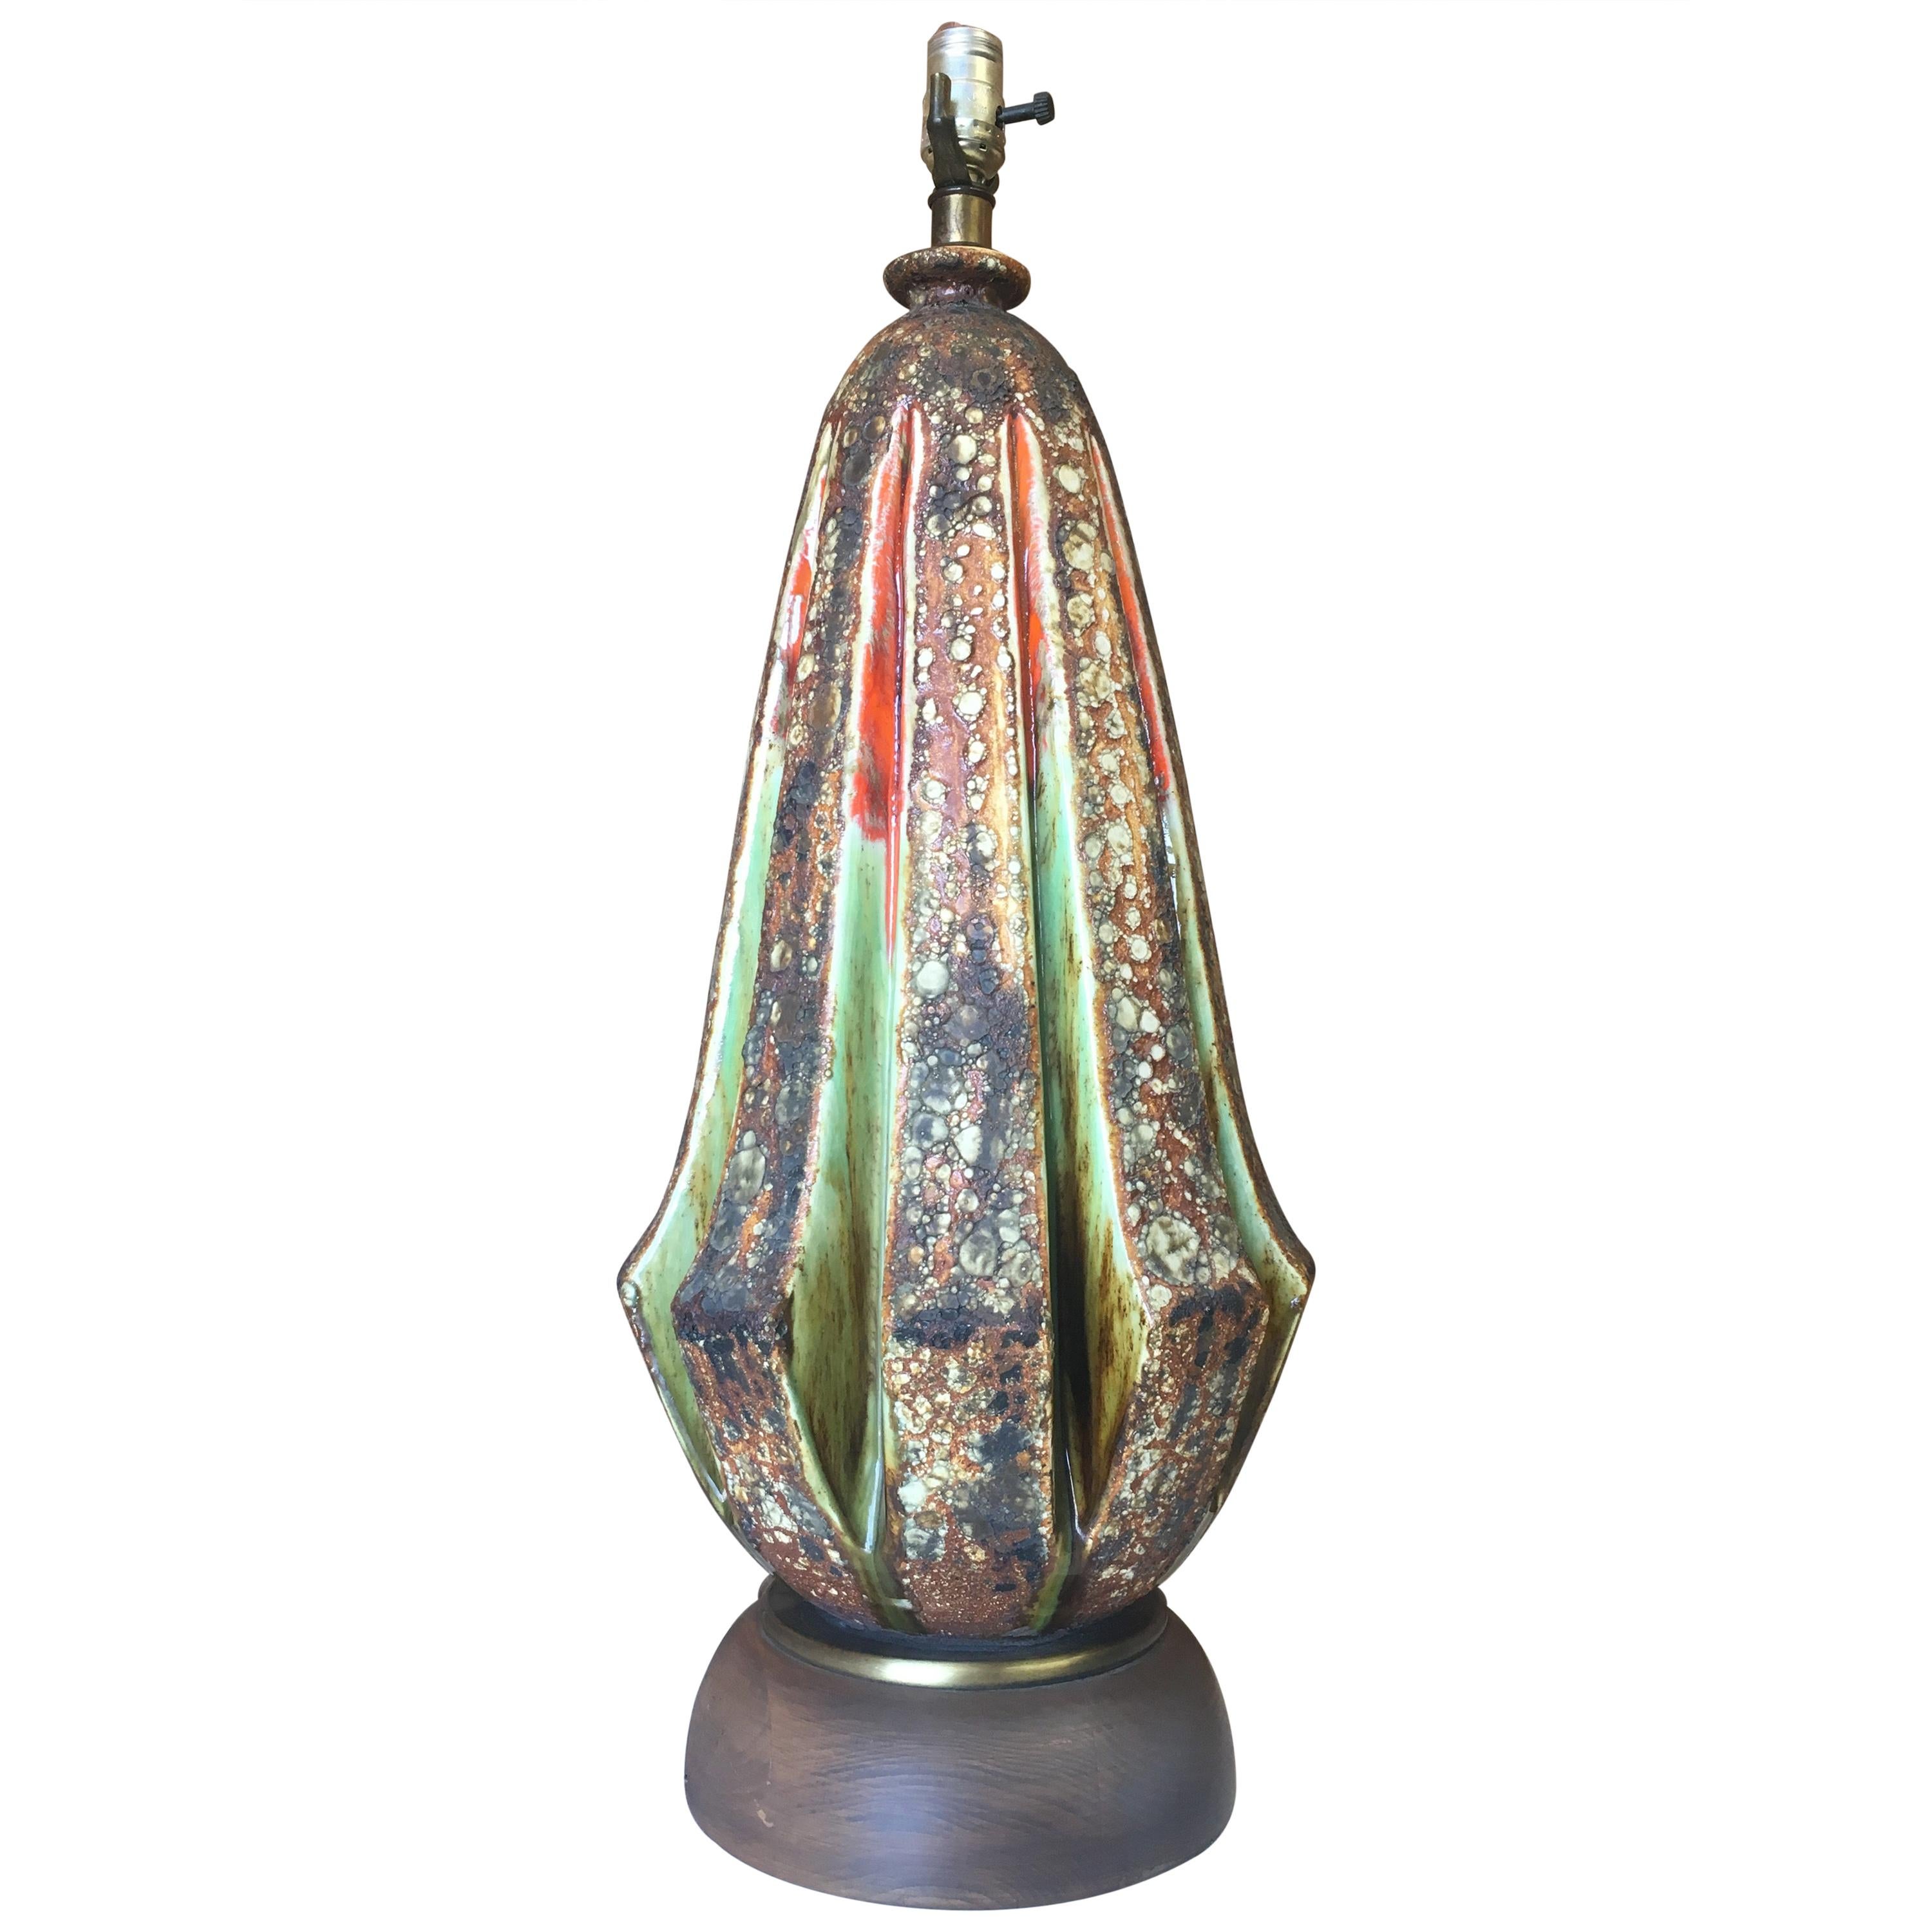 Midcentury Blister Glaze Table Lamp